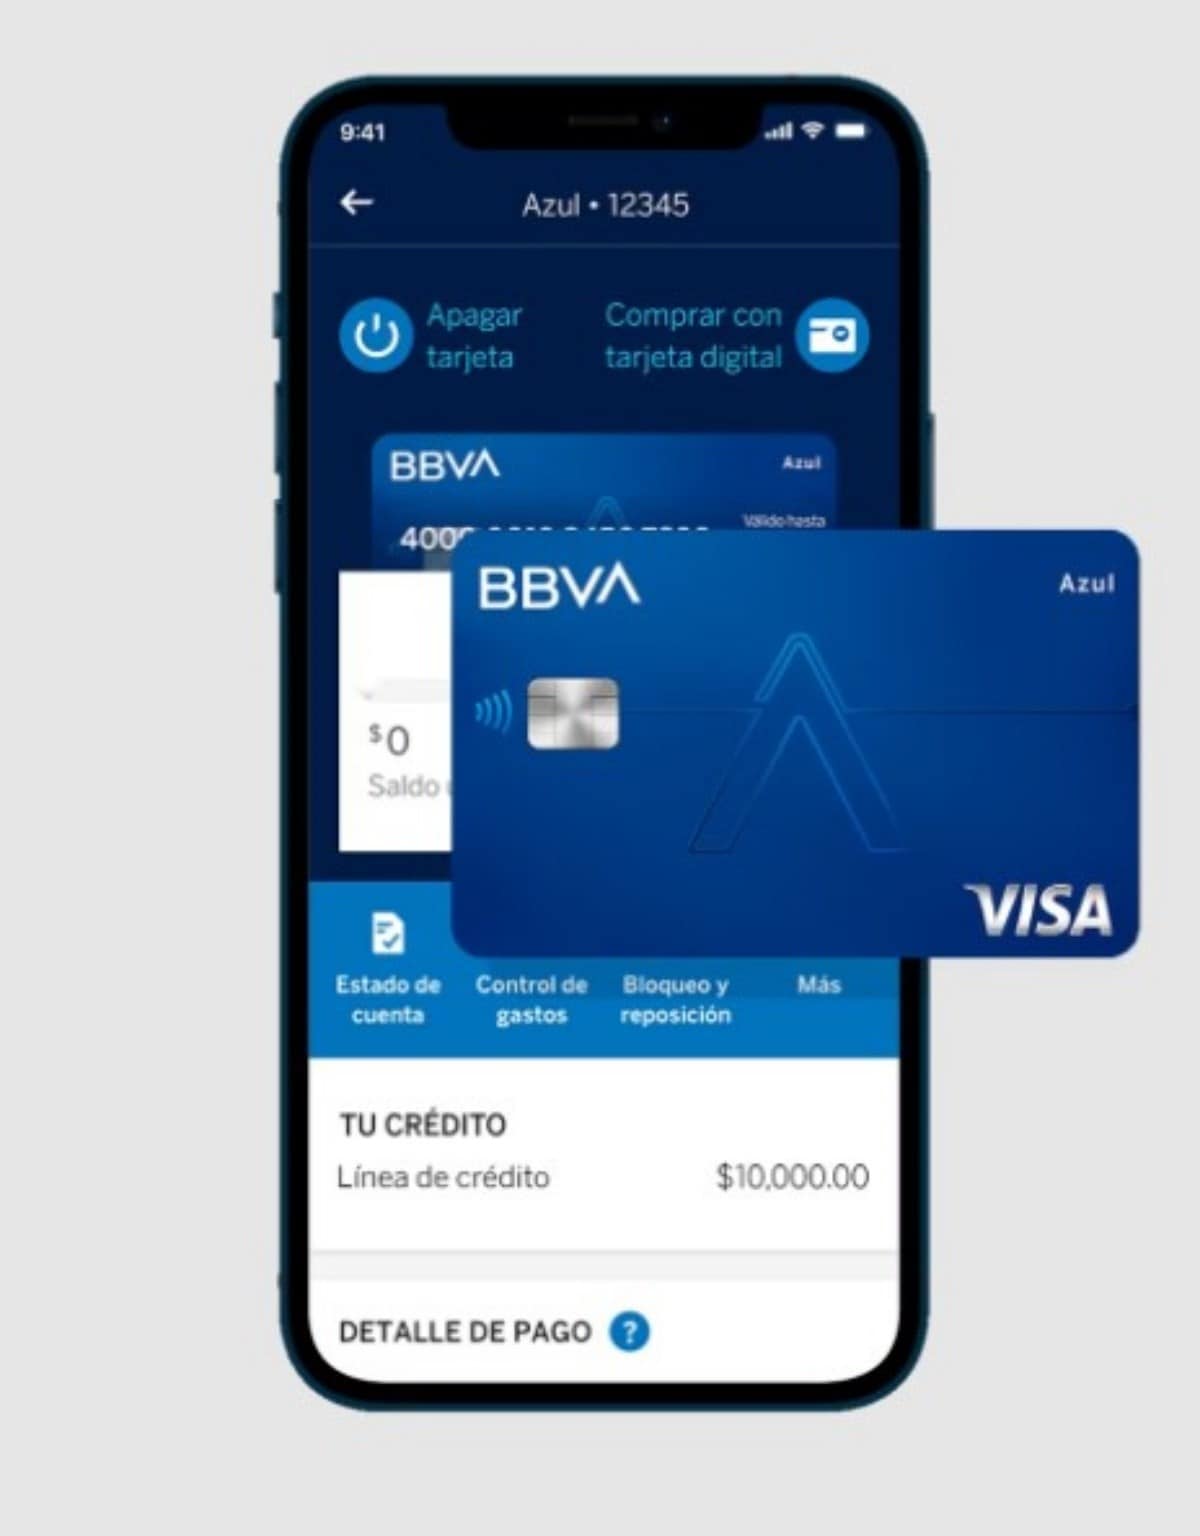 ¿Cómo funciona la tarjeta de crédito Azul de BBVA?